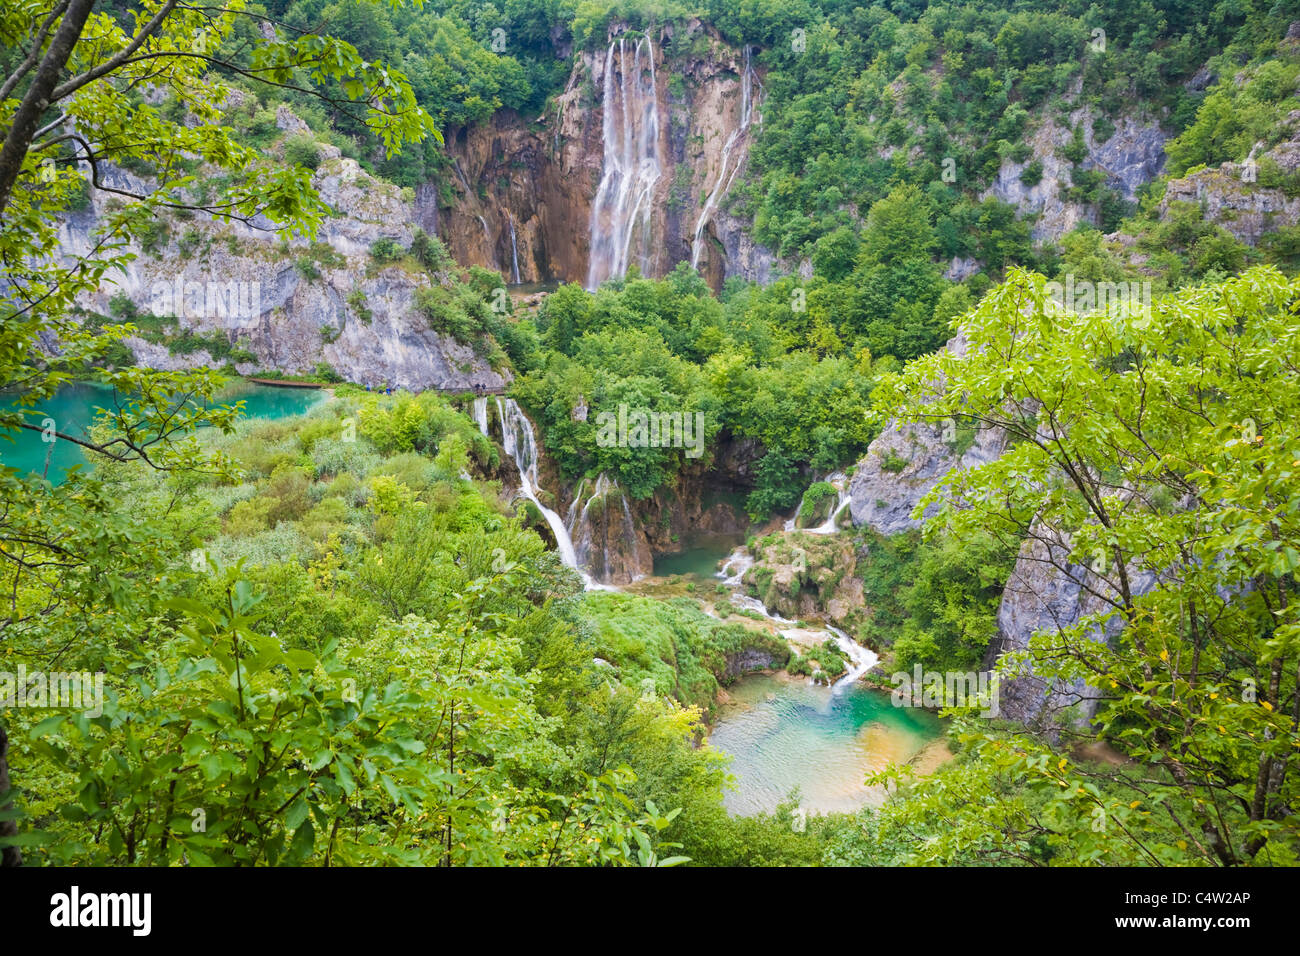 La Grande Cascade, Veliki slap, Plitvicka Jezera, le parc national des Lacs de Plitvice, Croatie, Lika-Senj Banque D'Images